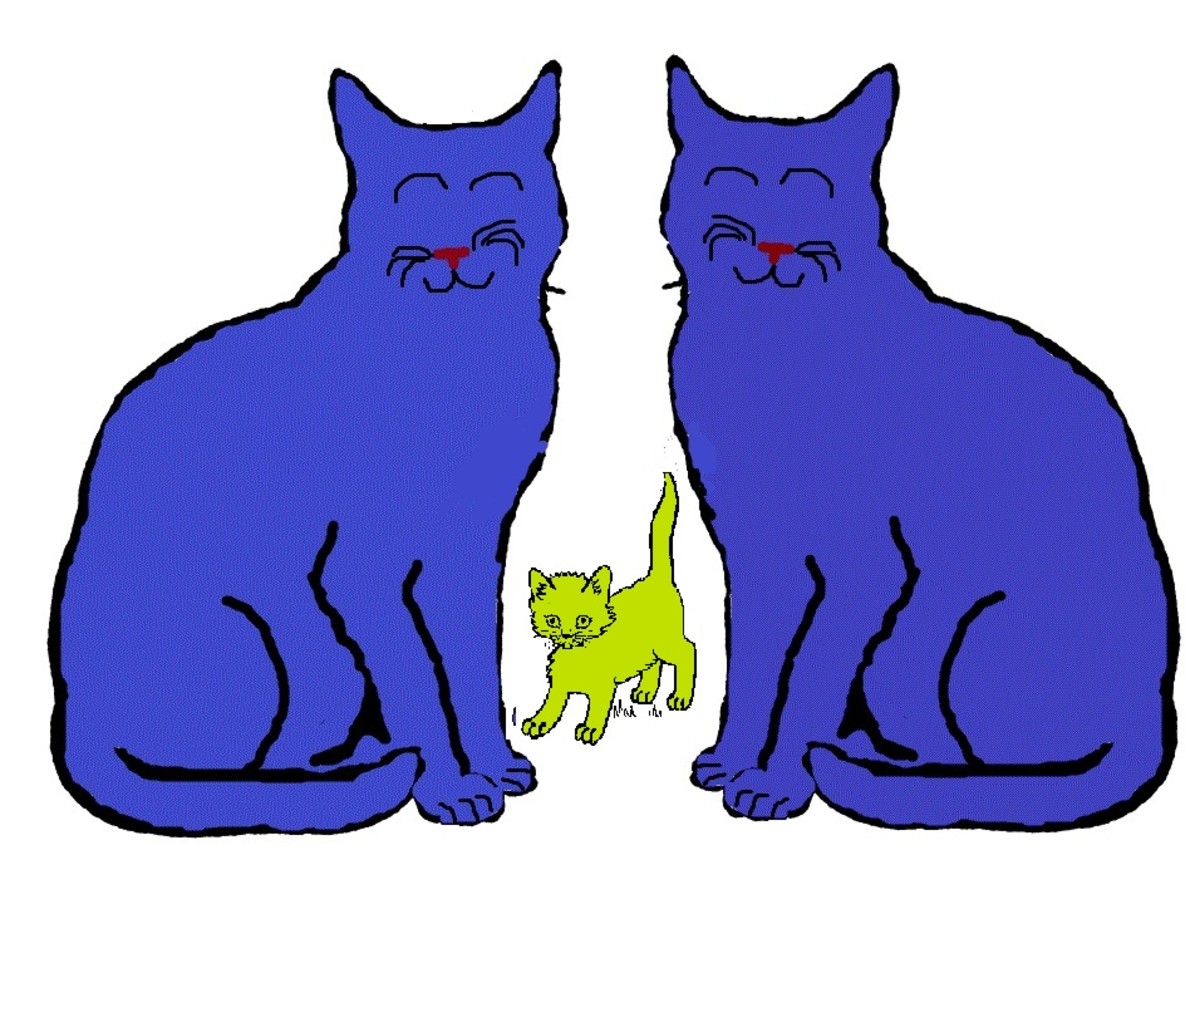 Indigo Cat X Indigo Cat = Green Genetic Mutation